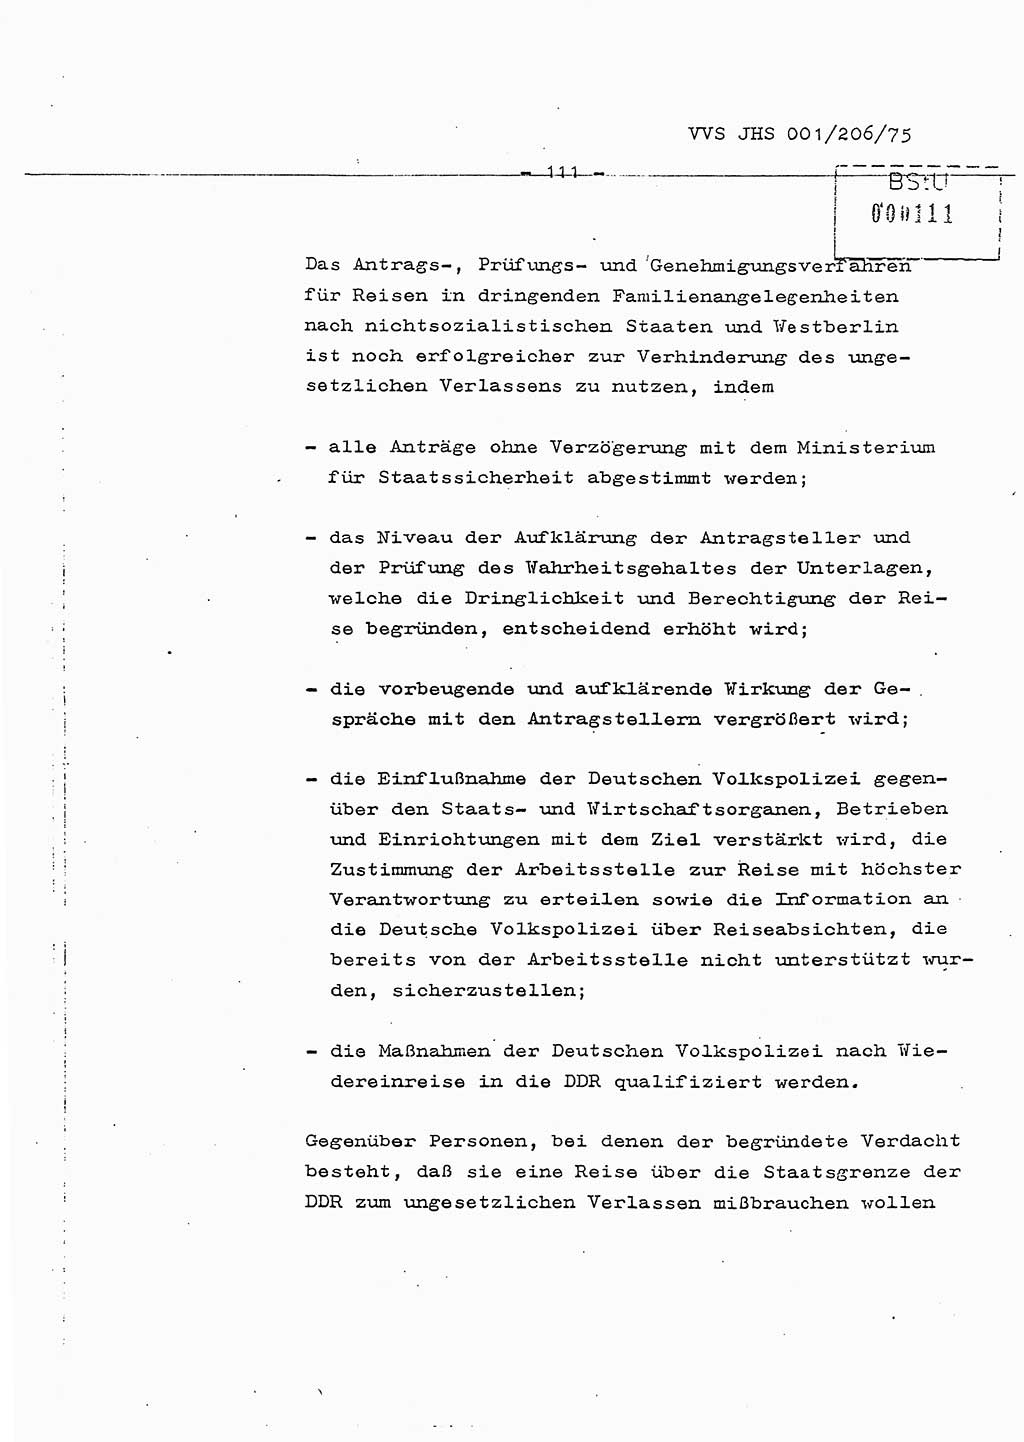 Dissertation Generalmajor Manfred Hummitzsch (Leiter der BV Leipzig), Generalmajor Heinz Fiedler (HA Ⅵ), Oberst Rolf Fister (HA Ⅸ), Ministerium für Staatssicherheit (MfS) [Deutsche Demokratische Republik (DDR)], Juristische Hochschule (JHS), Vertrauliche Verschlußsache (VVS) 001-206/75, Potsdam 1975, Seite 111 (Diss. MfS DDR JHS VVS 001-206/75 1975, S. 111)